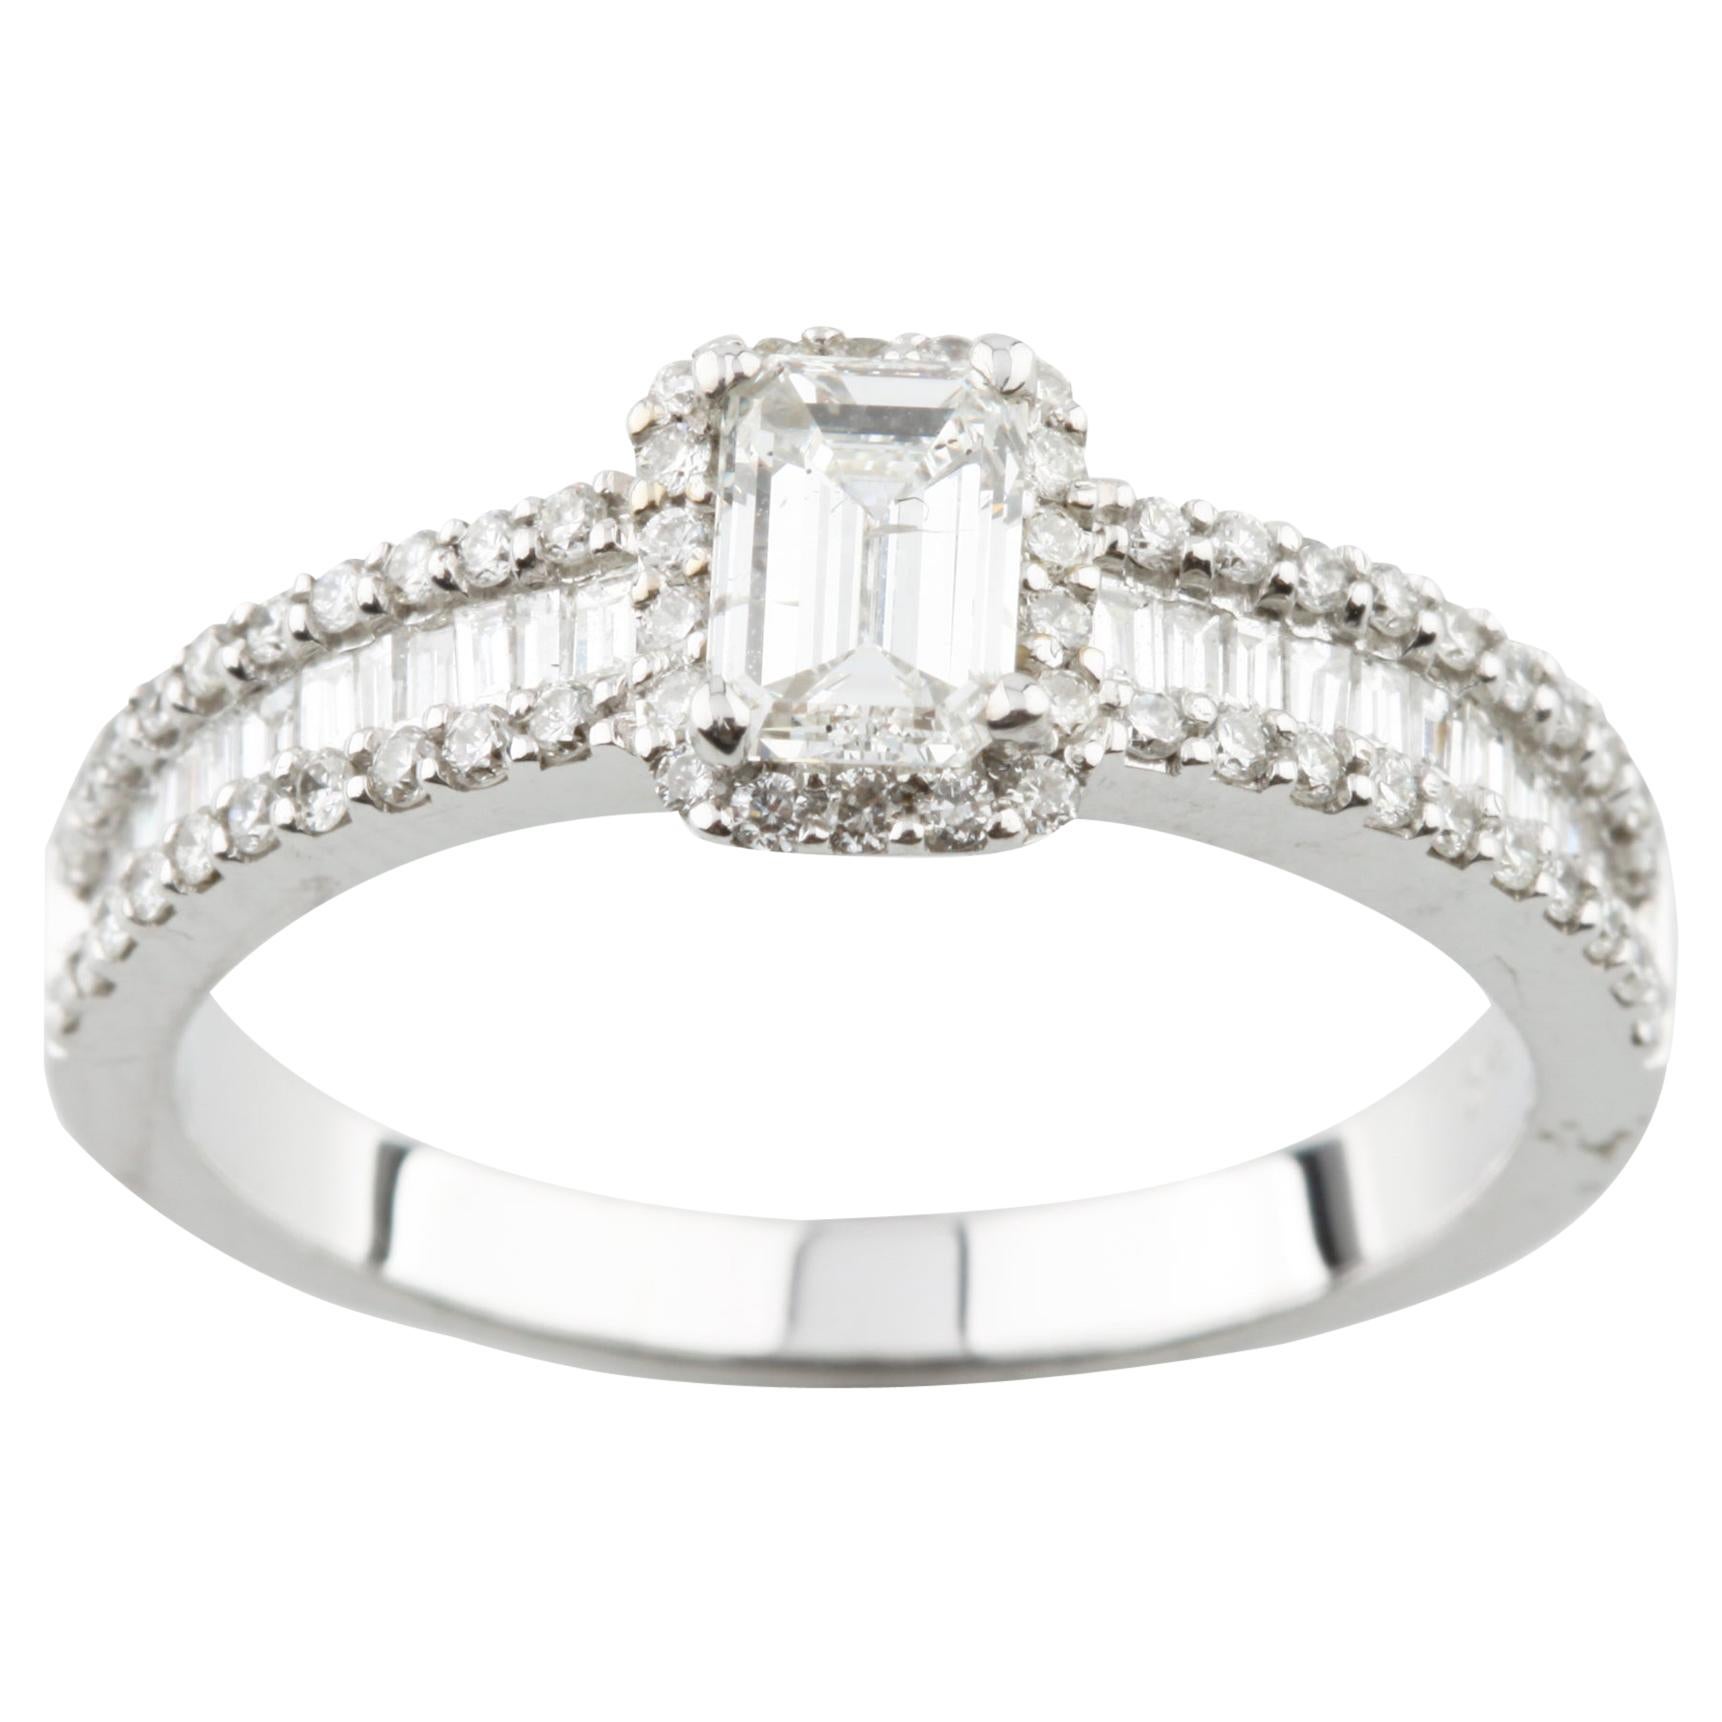 1.05 Carat Emerald Cut Diamond Engagement Ring Set in 14 Karat White Gold